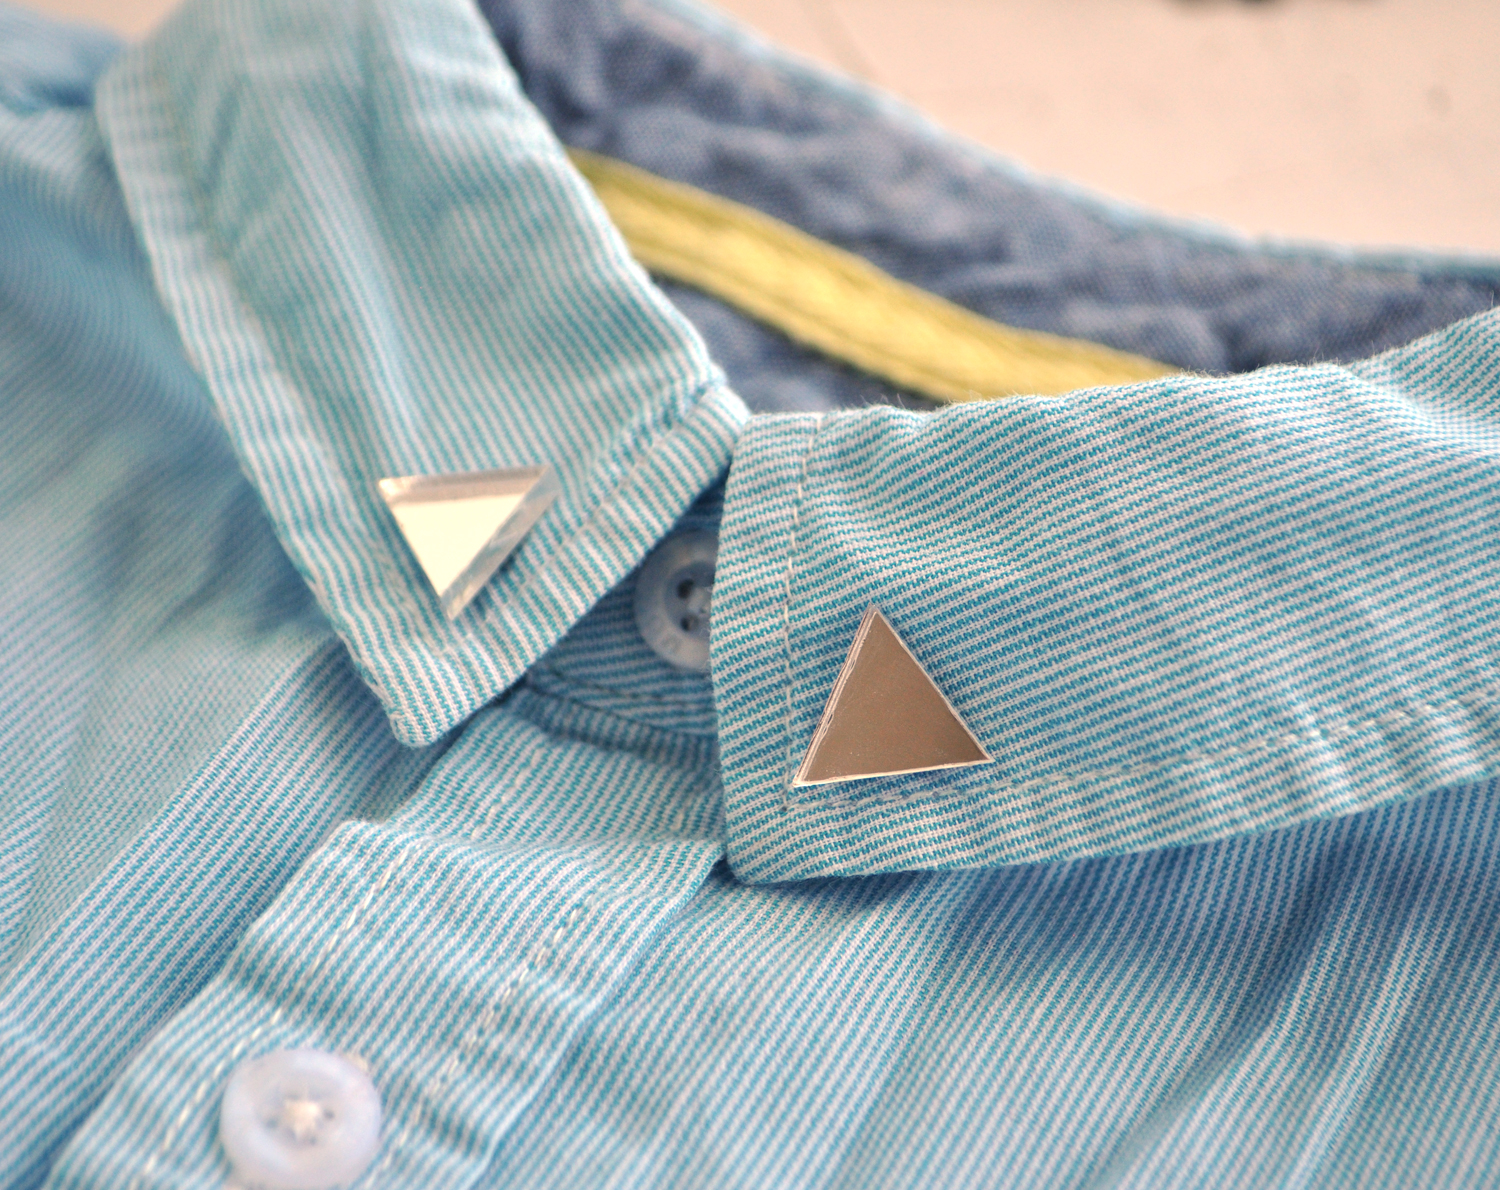 Треугольники зеркальные броши на воротник рубашки ручной работы купить